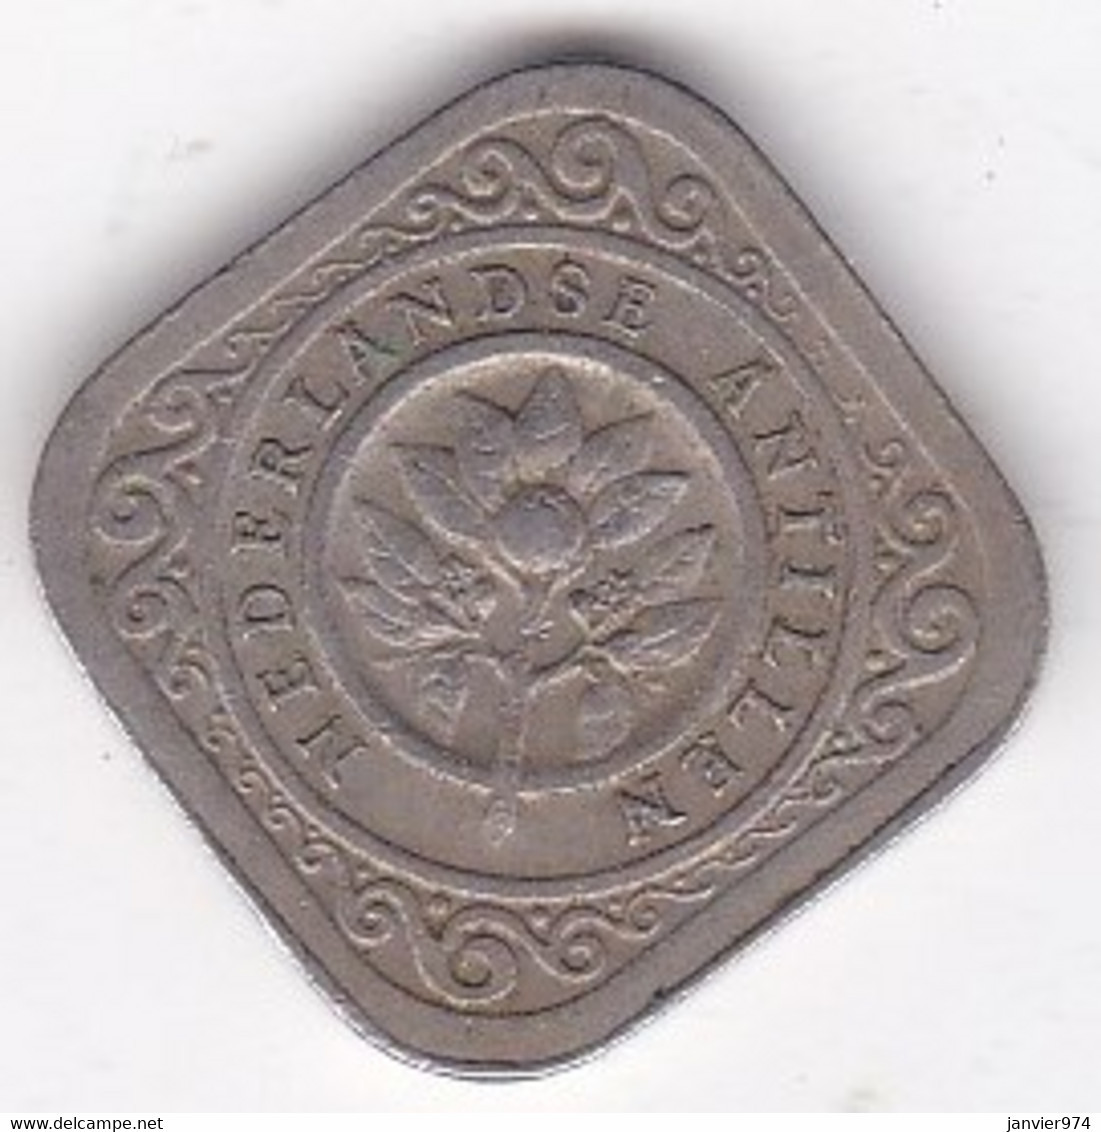 Antilles Néerlandaises, 5 Cents 1962, Juliana, Copper-Nickel. KM# 6 - Antilles Néerlandaises